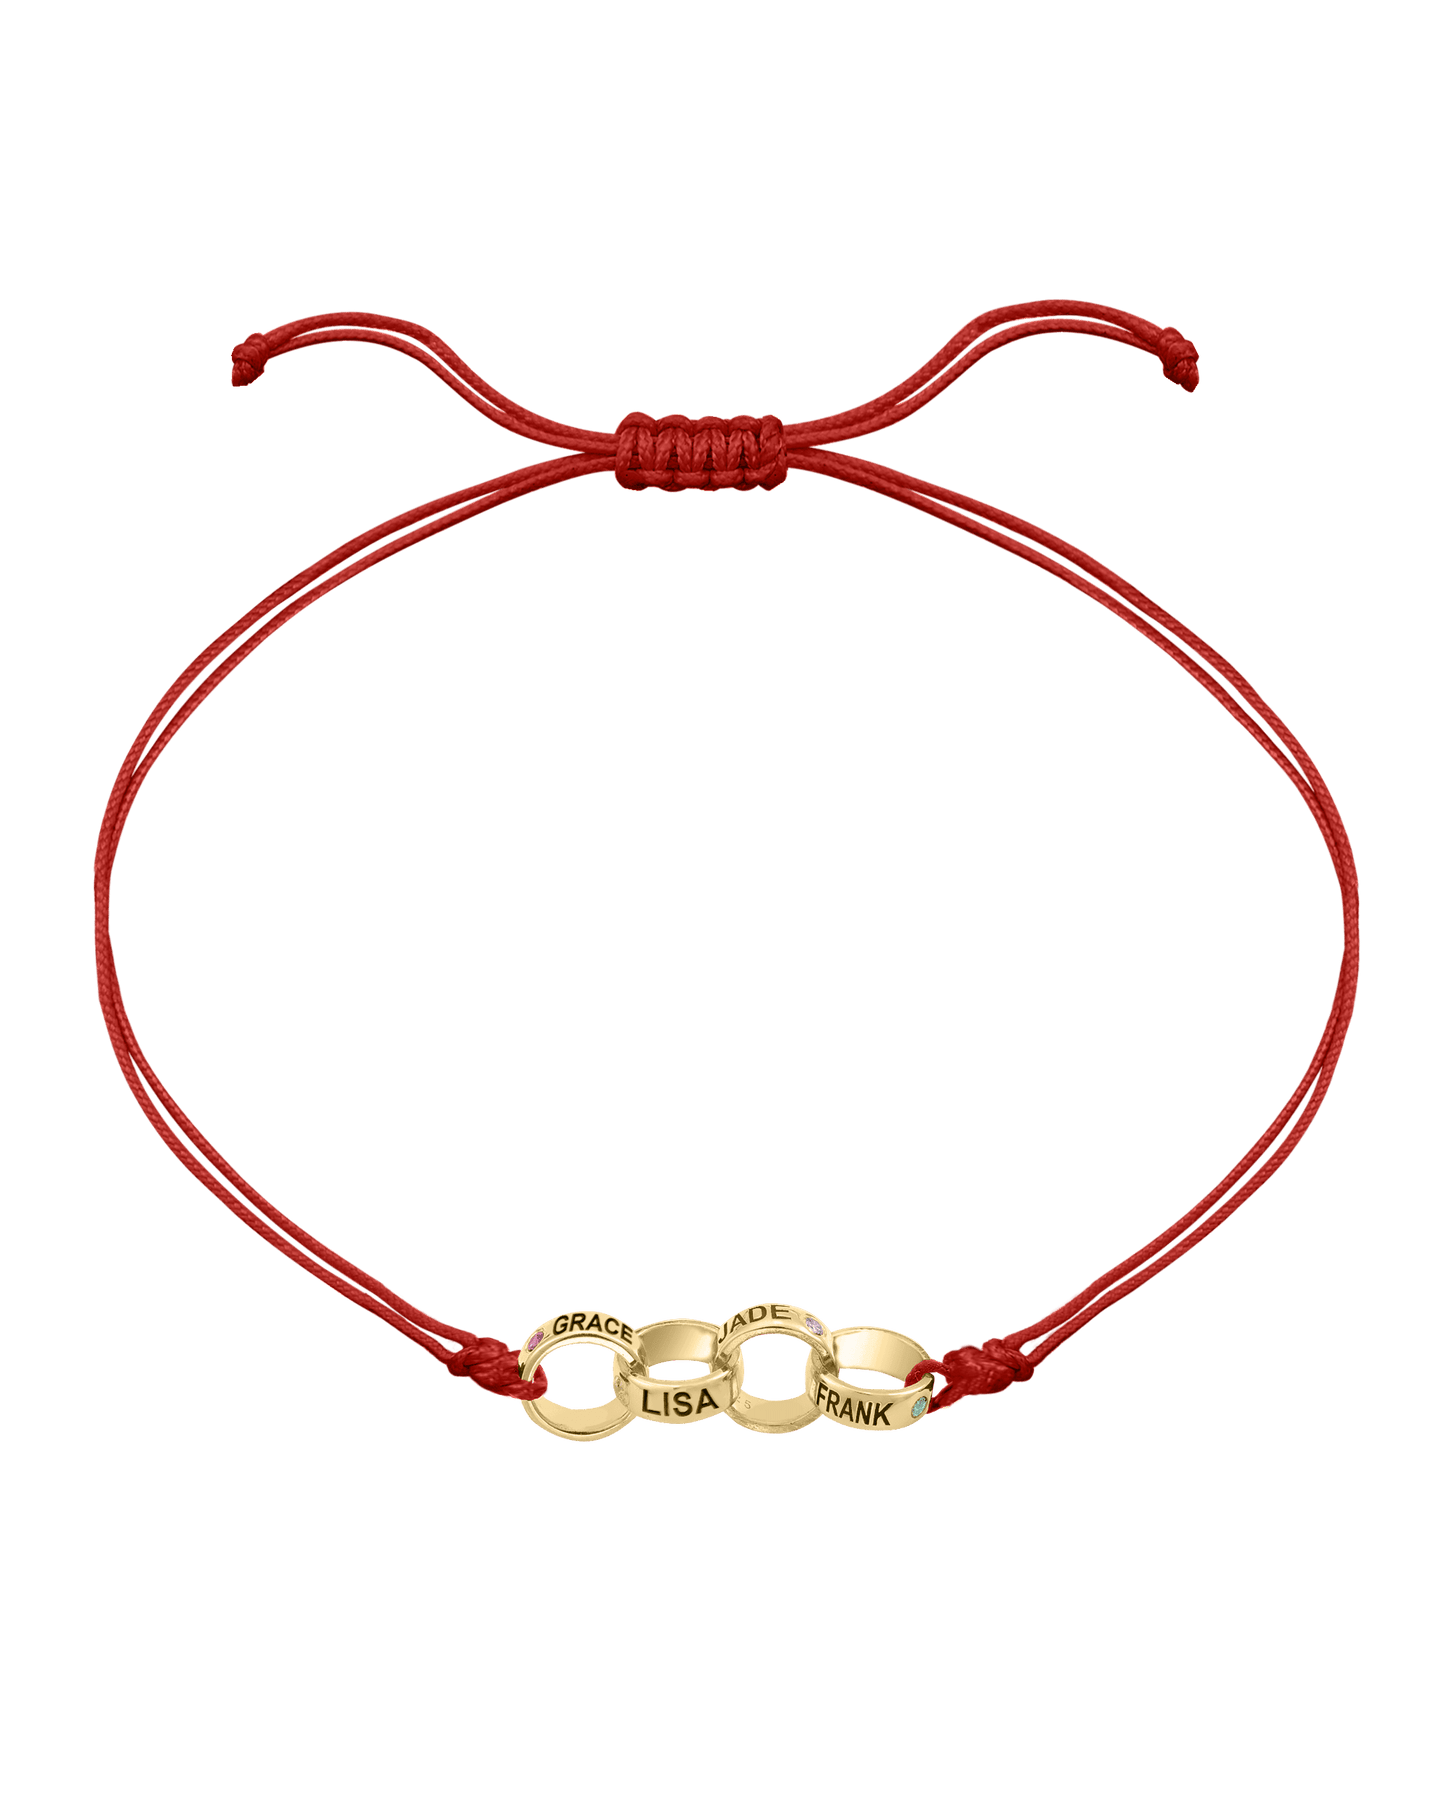 Engravable Links of Love - 18K Gold Vermeil Bracelets magal-dev 4 Red 